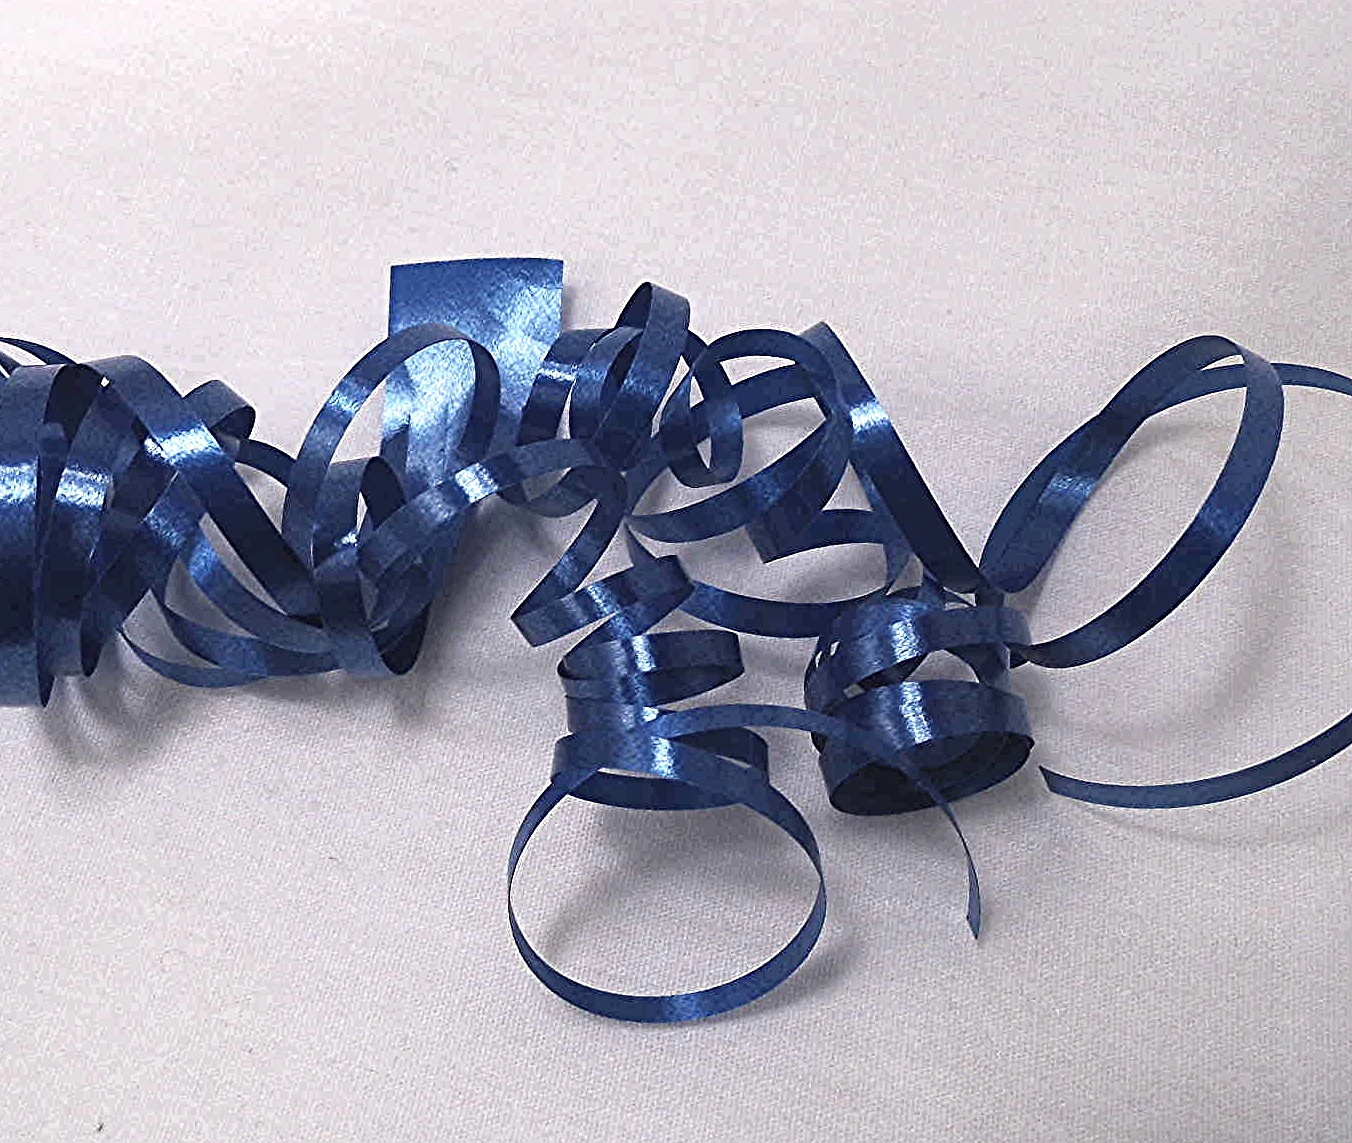 Ribbon Shredder: Ribbon Splitter, Ribbon Curler Tools for Gift